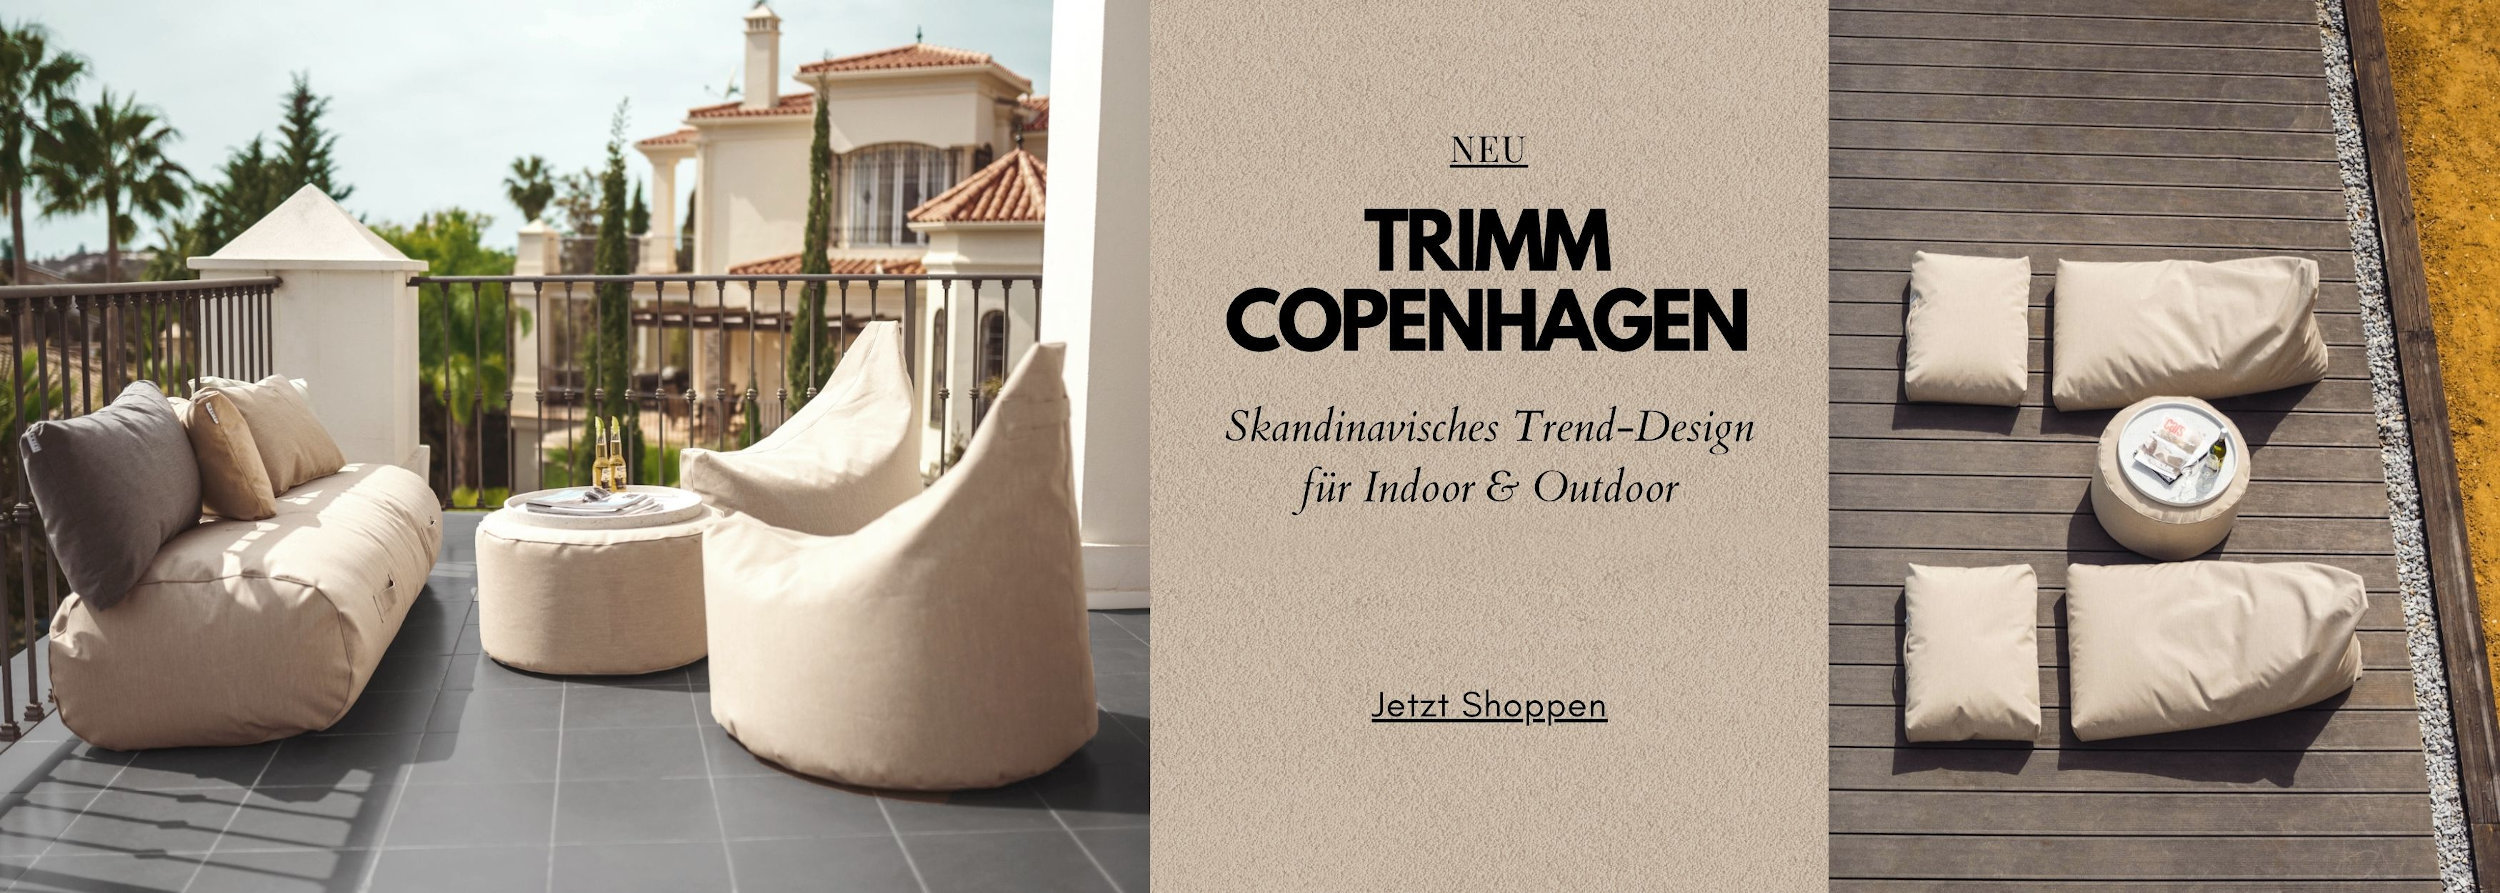 Trimm Copenhagen Sitzsack Onlineshop 